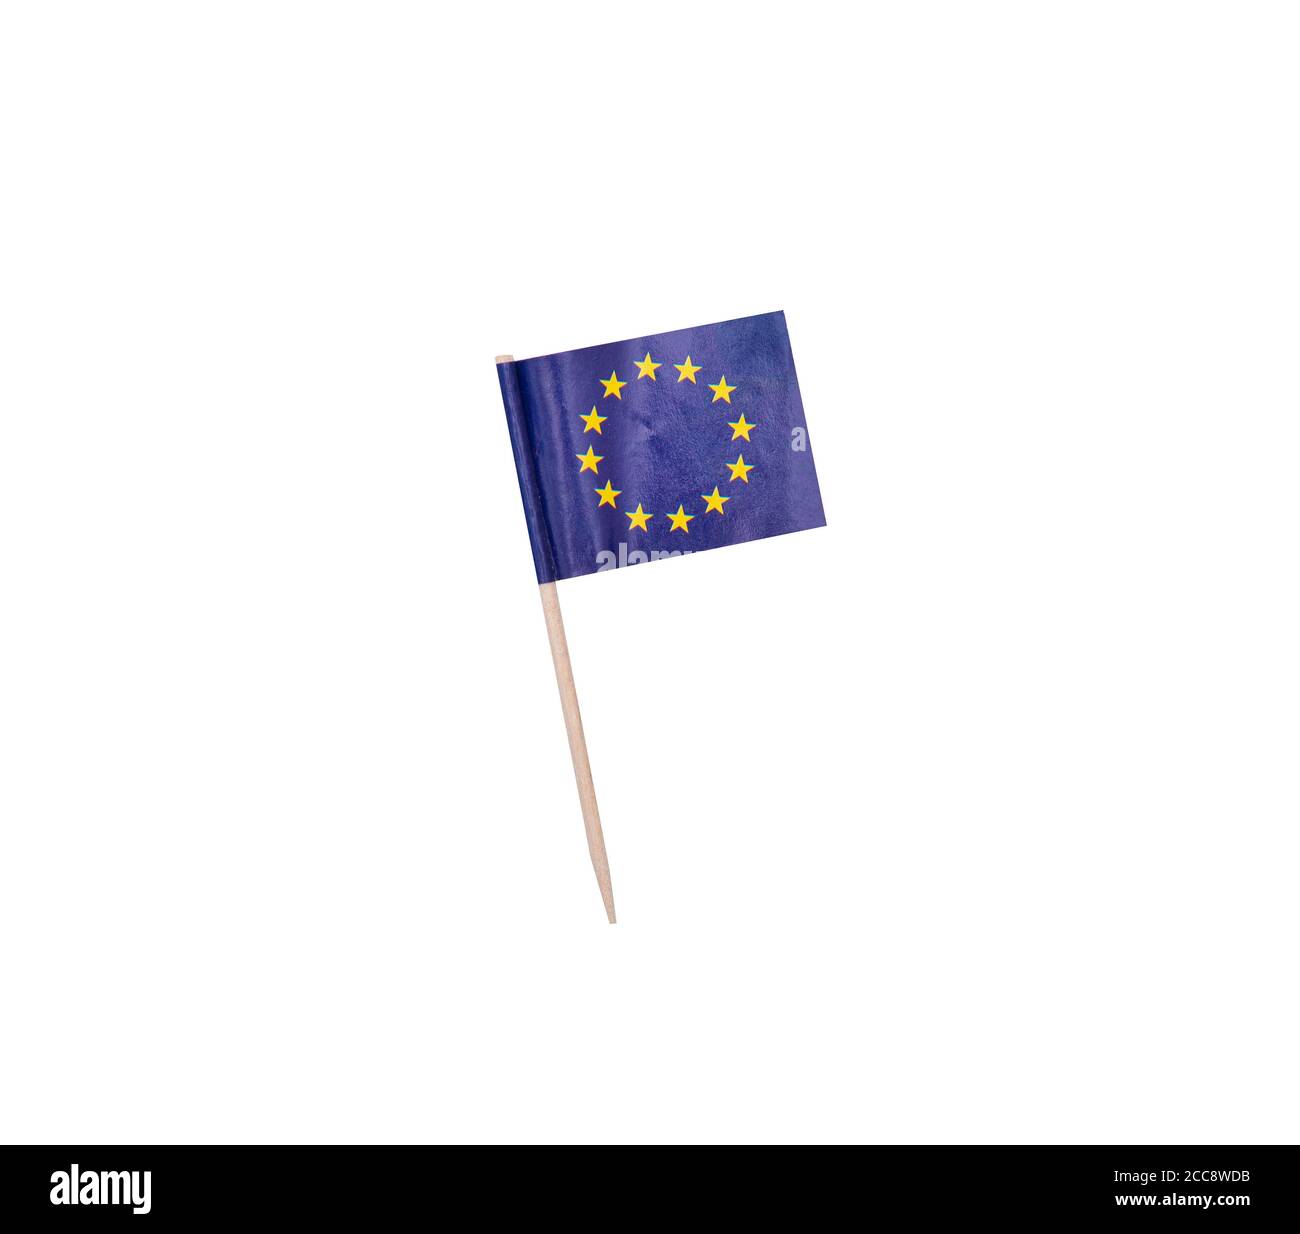 Zahnstocher mit einer Papierfahne der Europäischen Union, EU-Flagge auf einem hölzernen Zahnstocher Stockfoto